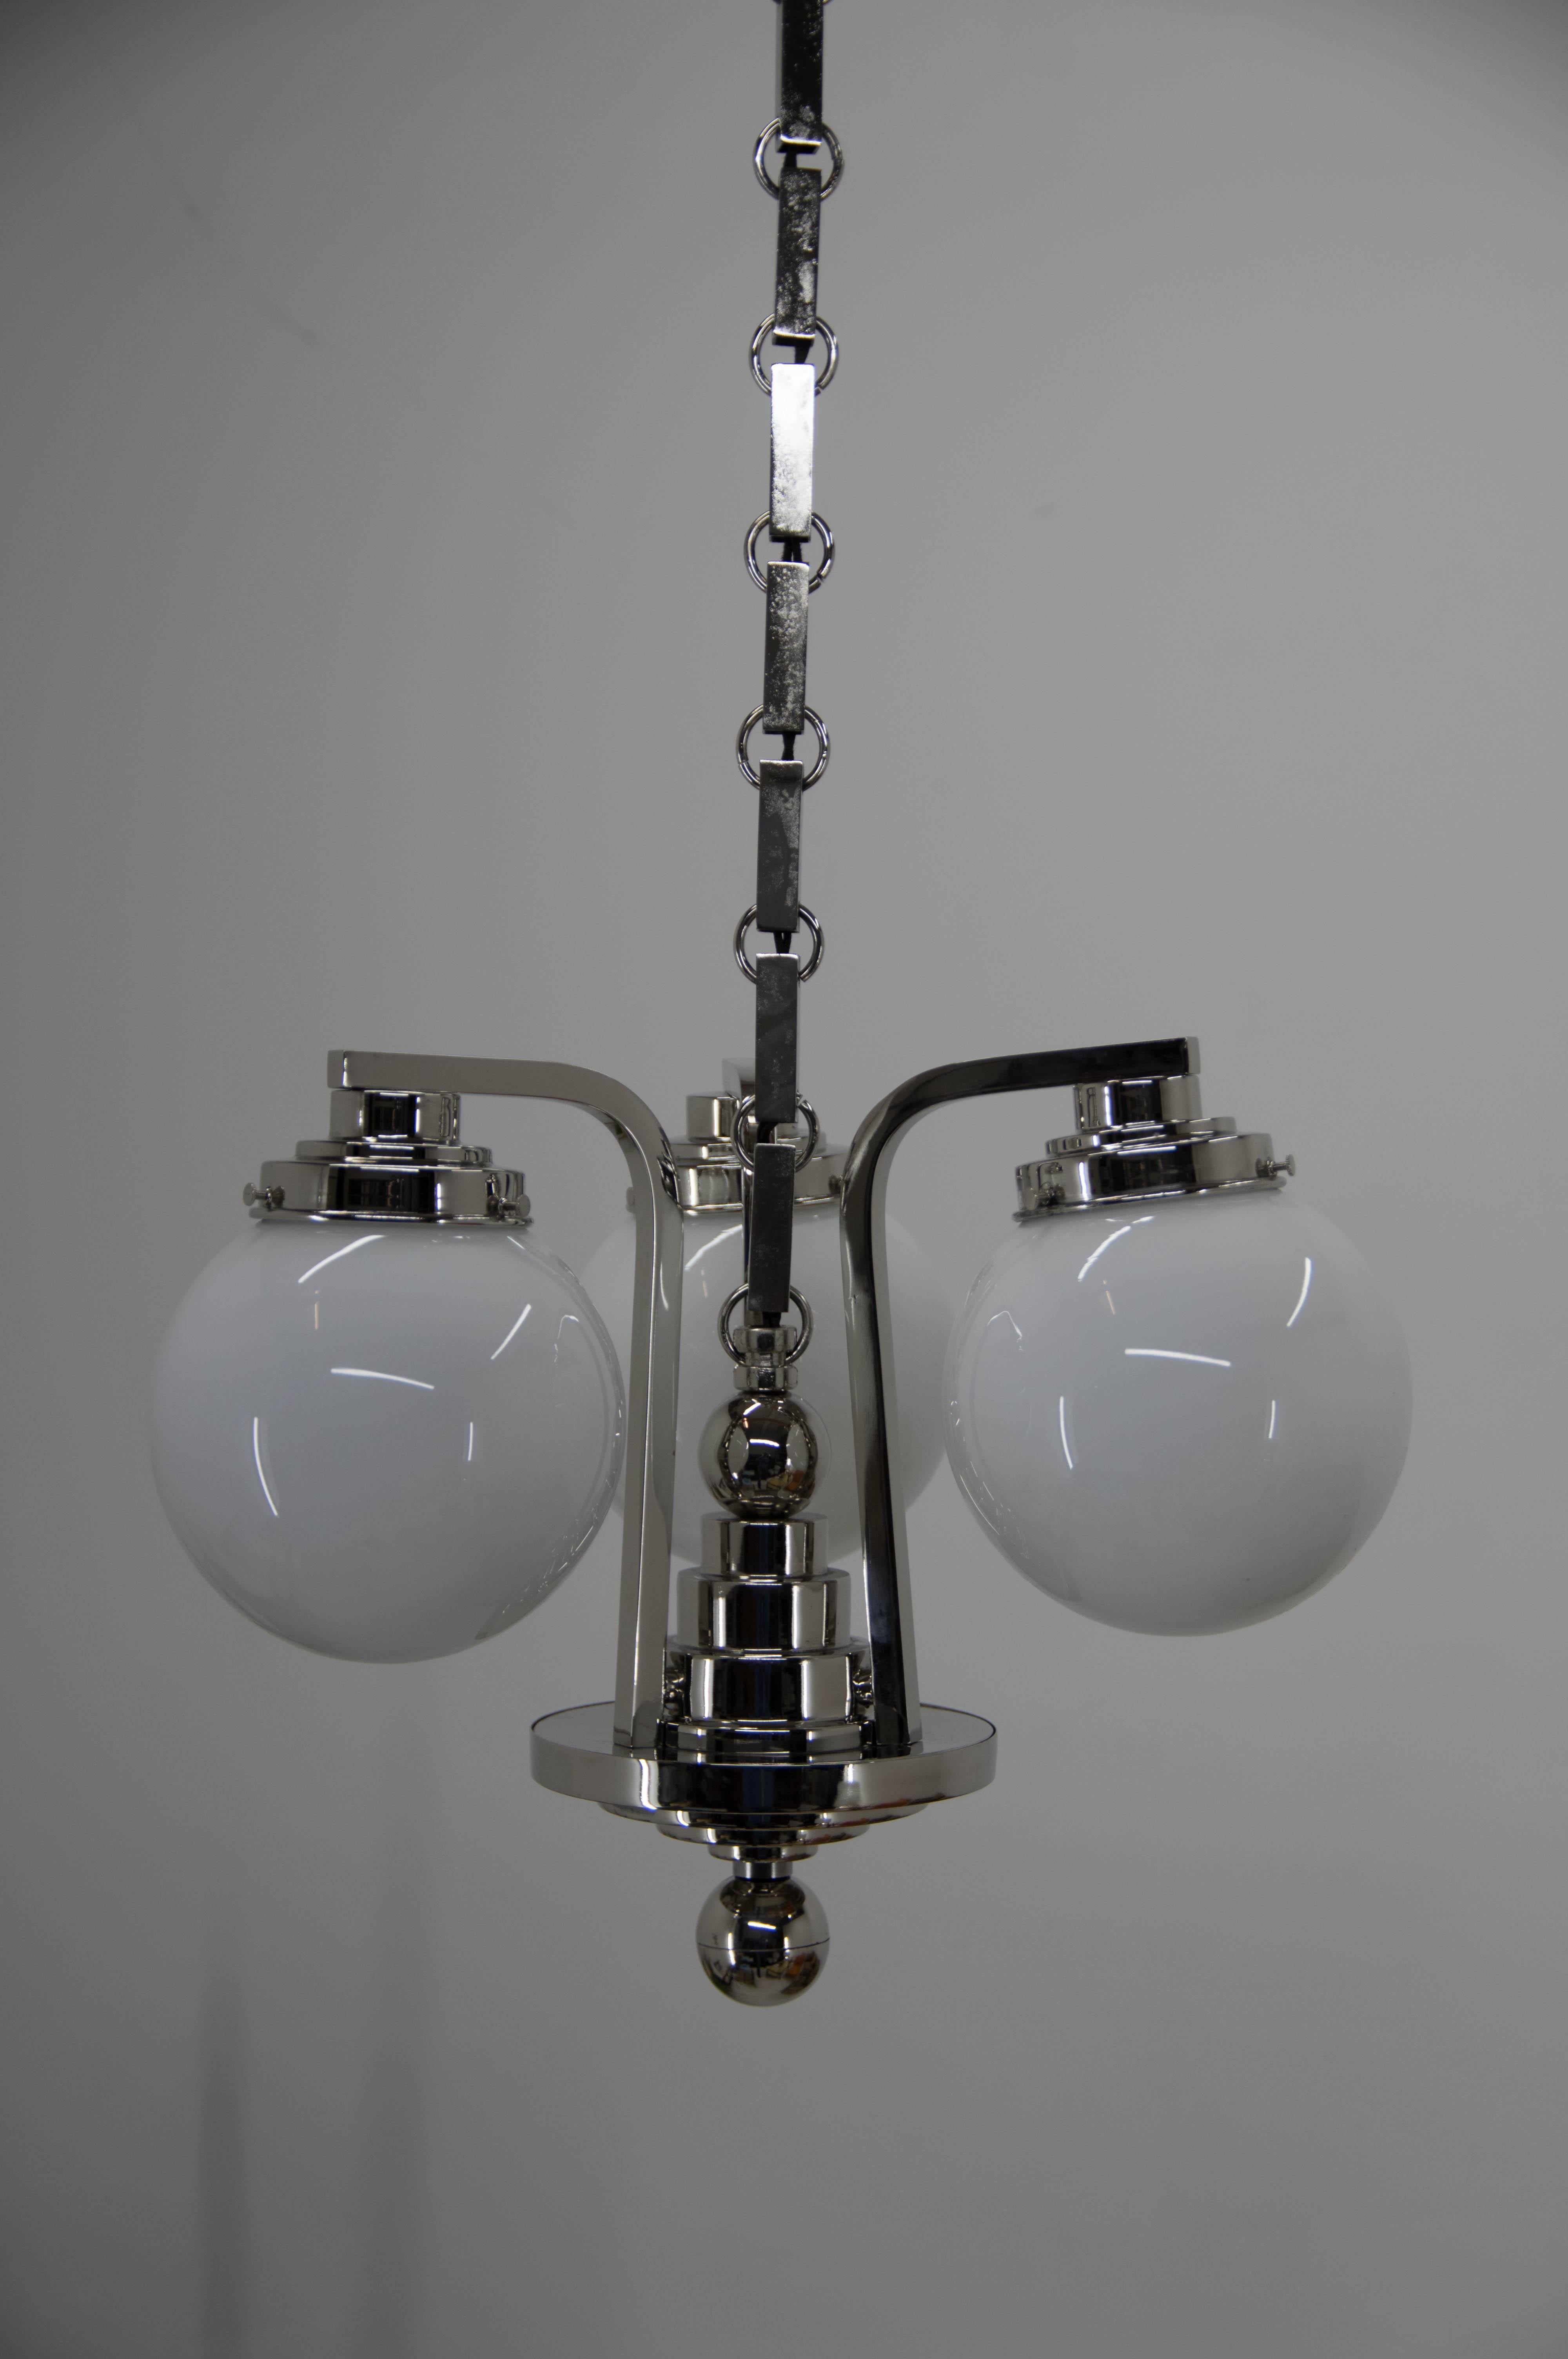 Magnifique lustre Art Déco ou Rondocubiste.
Entièrement restauré : nouveau nickelage, nouveau verre
La hauteur peut être raccourcie sur demande
Câblé : 3 ampoules 40W, E25-E27
Compatible avec le câblage américain.
   